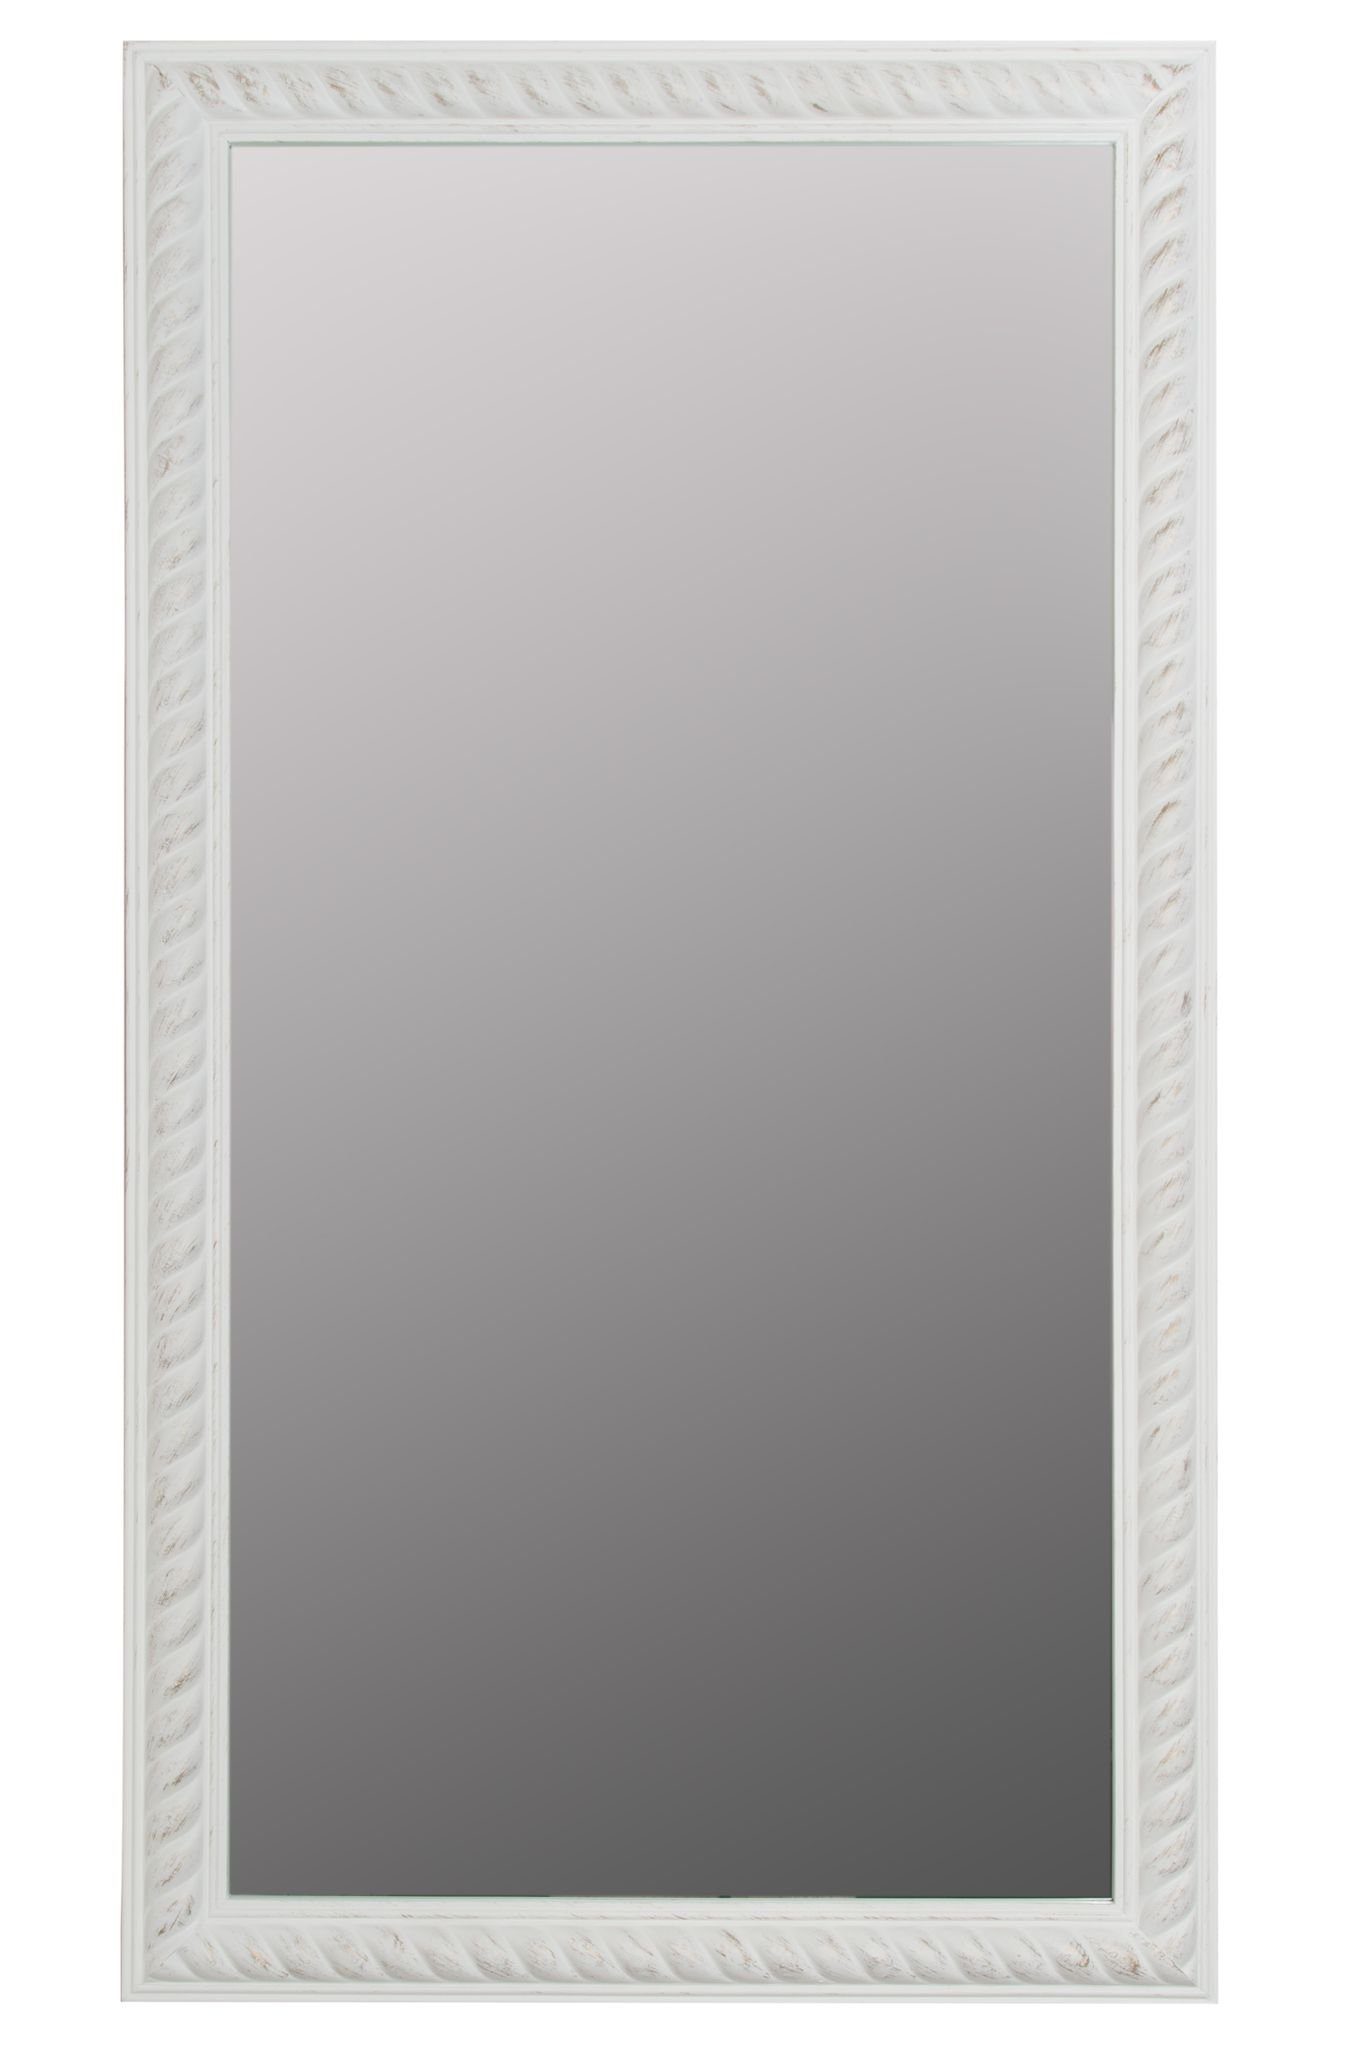 elbmöbel Wandspiegel Wandspiegel Spiegel Badezimmerspiegel, Wandspiegel: Kordelrahmen 72x132x7 cm holz weiß vintage weiß | weiß